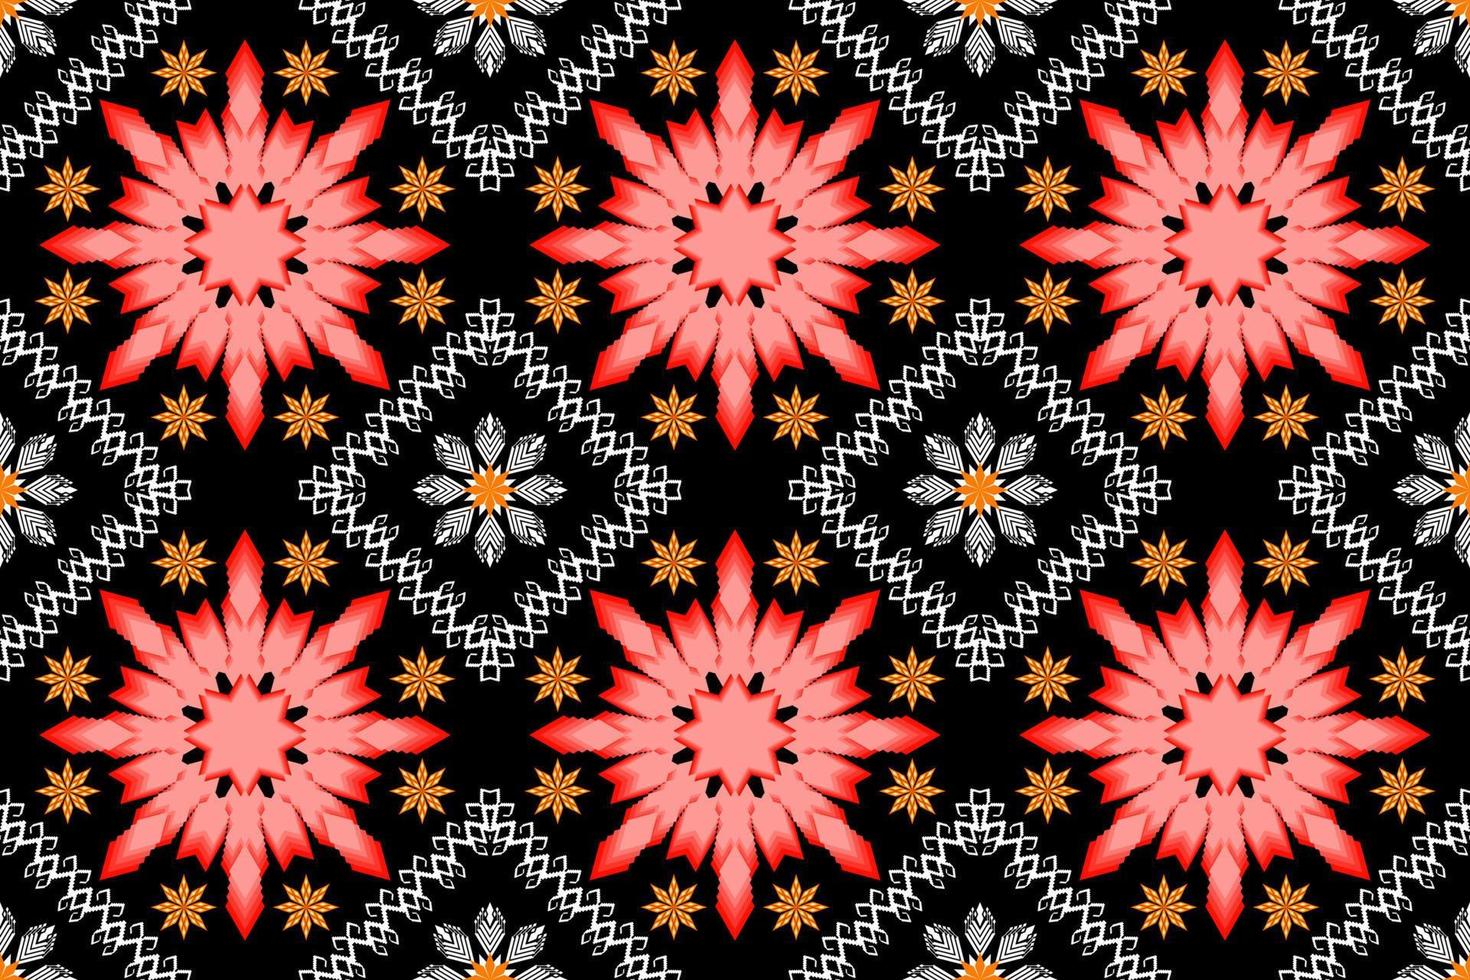 patrón de arte tradicional oriental étnico geométrico. estilo de bordado tribal de figura. diseño para antecedentes étnicos, papel tapiz, ropa, envoltura, tela, elemento, sarong, ilustración vectorial vector